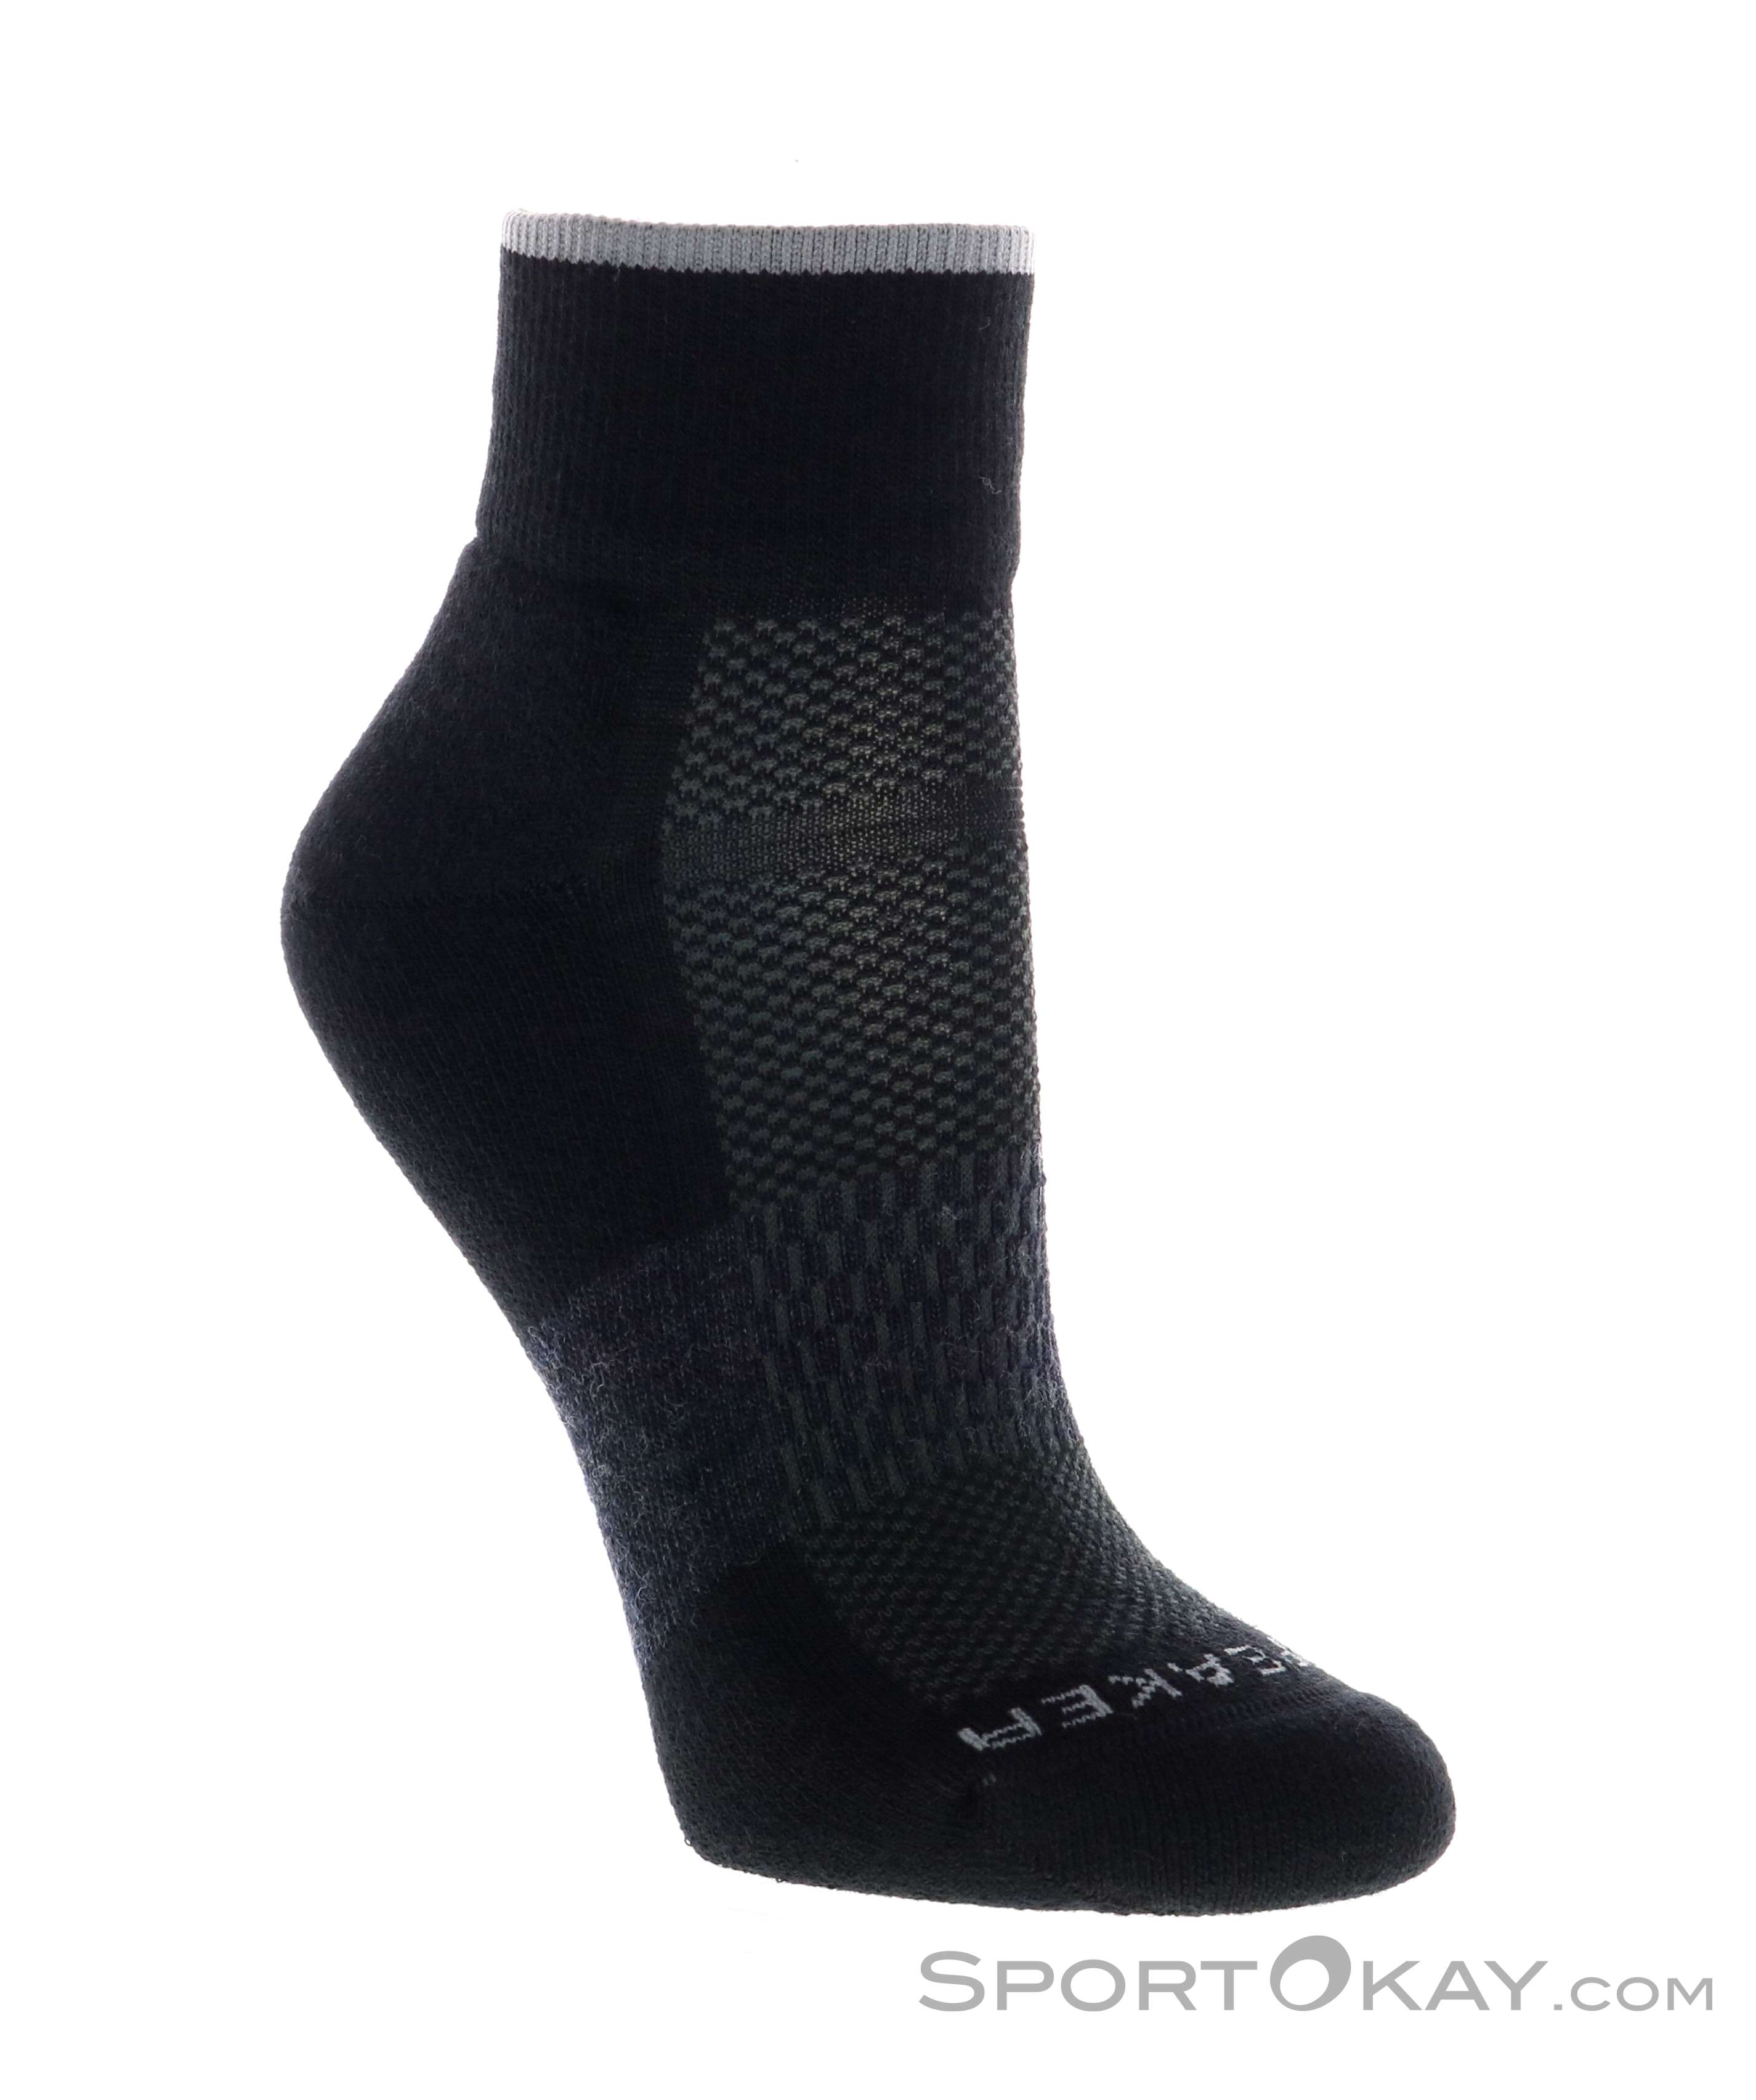 Men's Merino Multisport Light Mini Socks